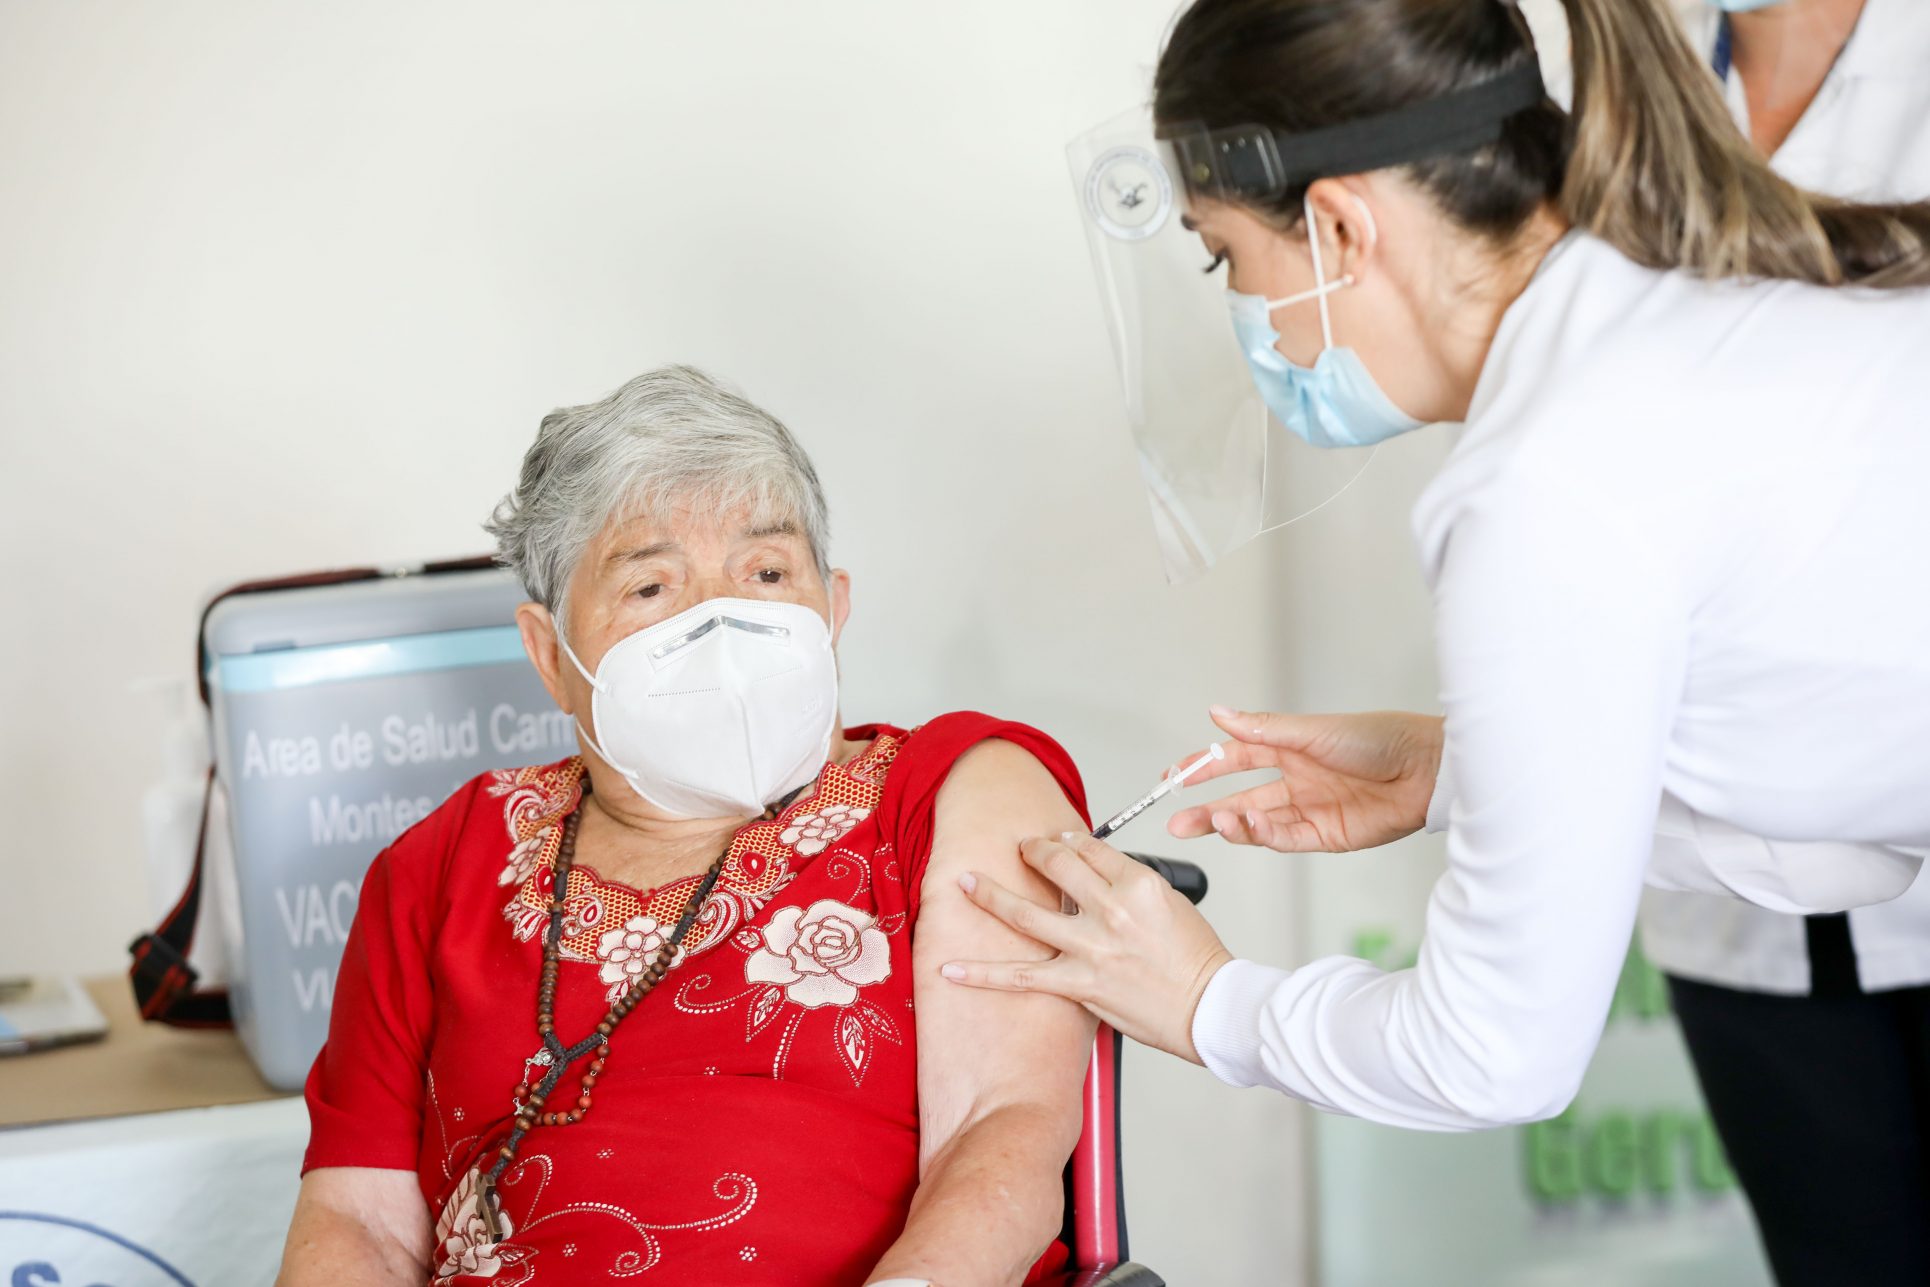 Alemania duda de aplicar vacuna de AstraZeneca a mayores de 65 años